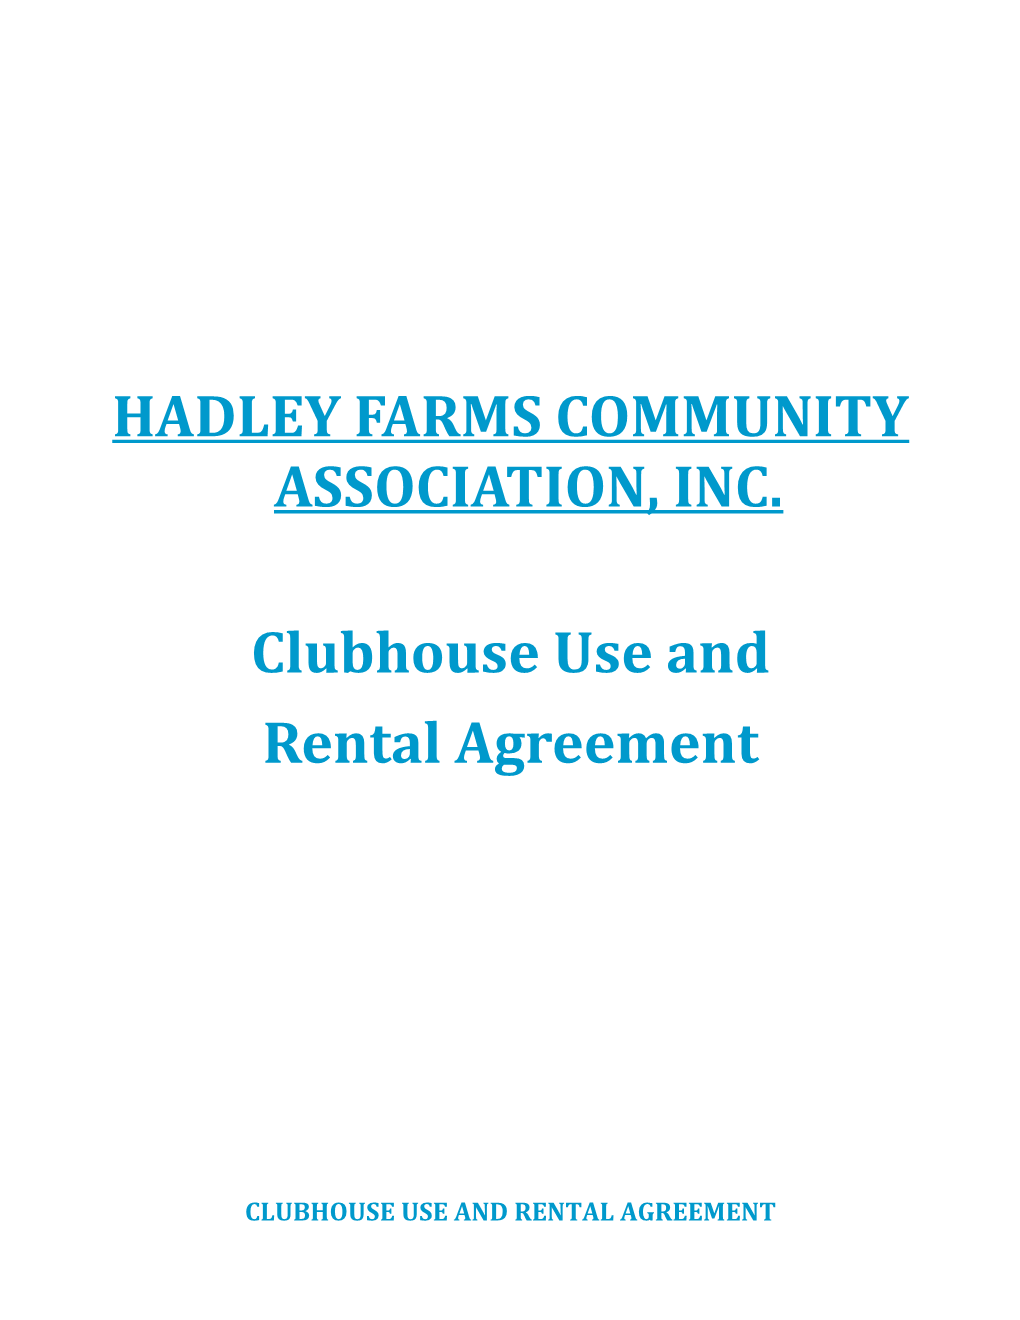 Hadley Farms Community Association, Inc